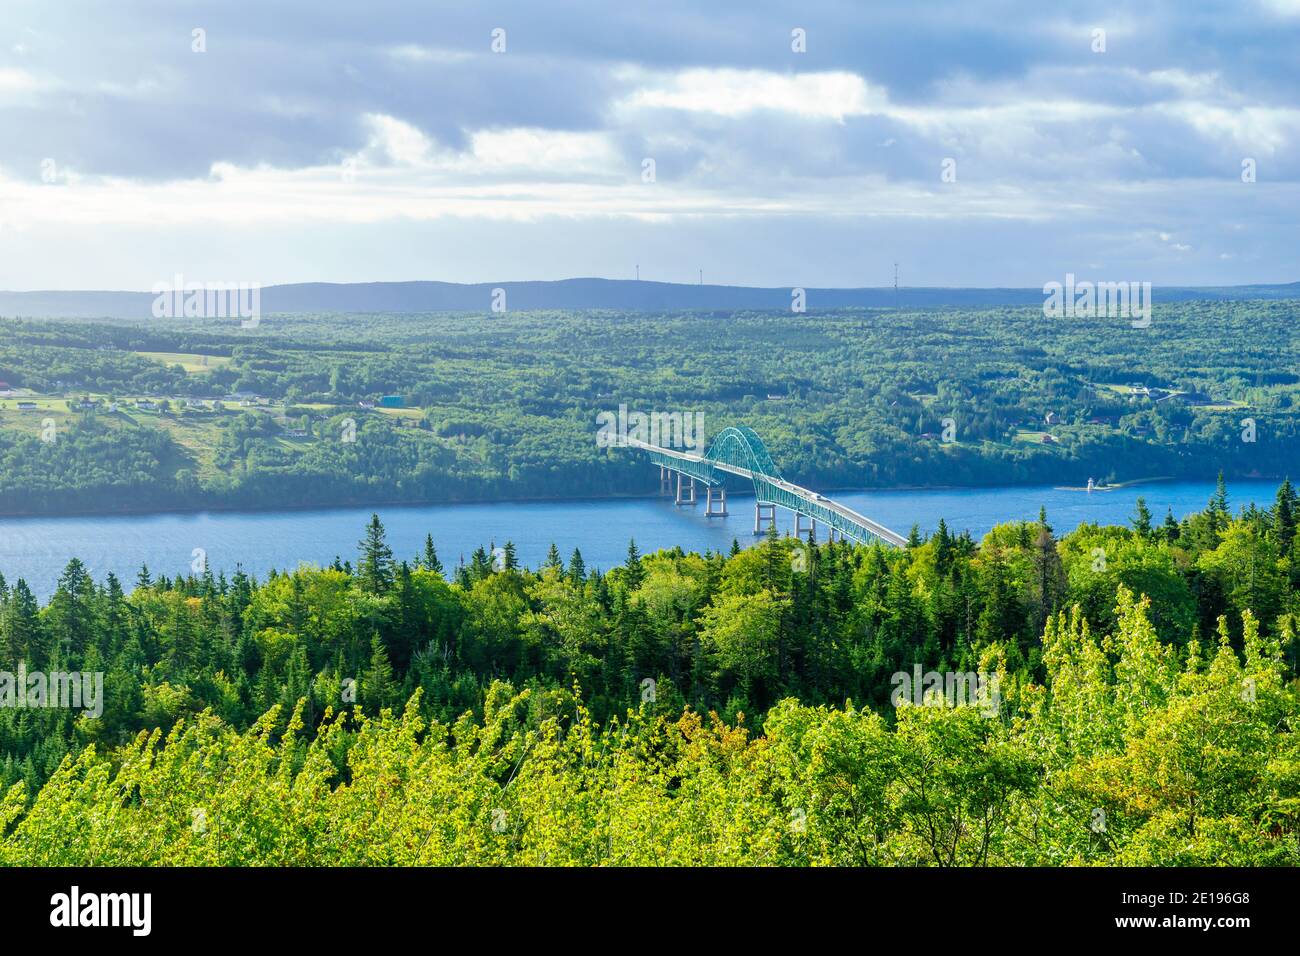 View of the Seal Island Bridge, in Cape Breton island, Nova Scotia, Canada Stock Photo